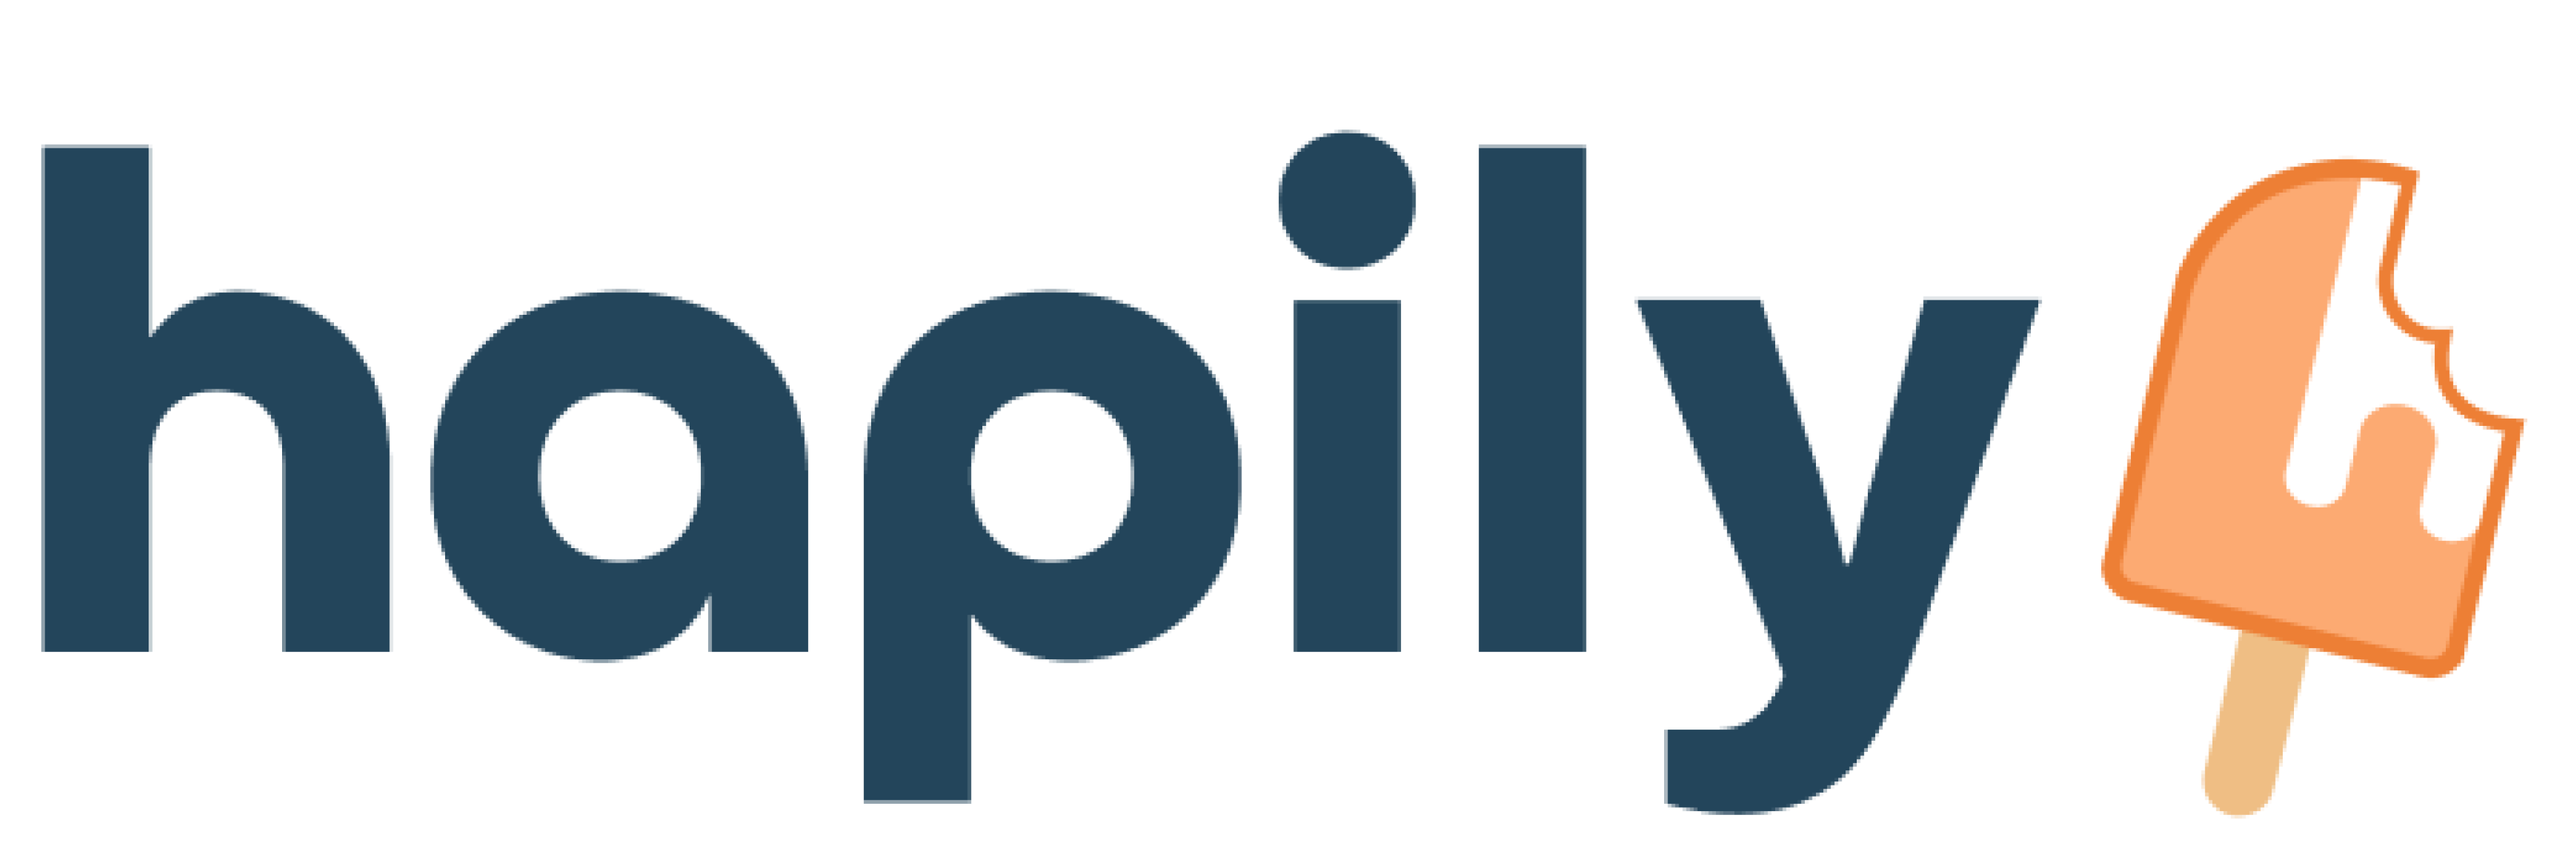 hapily-logo